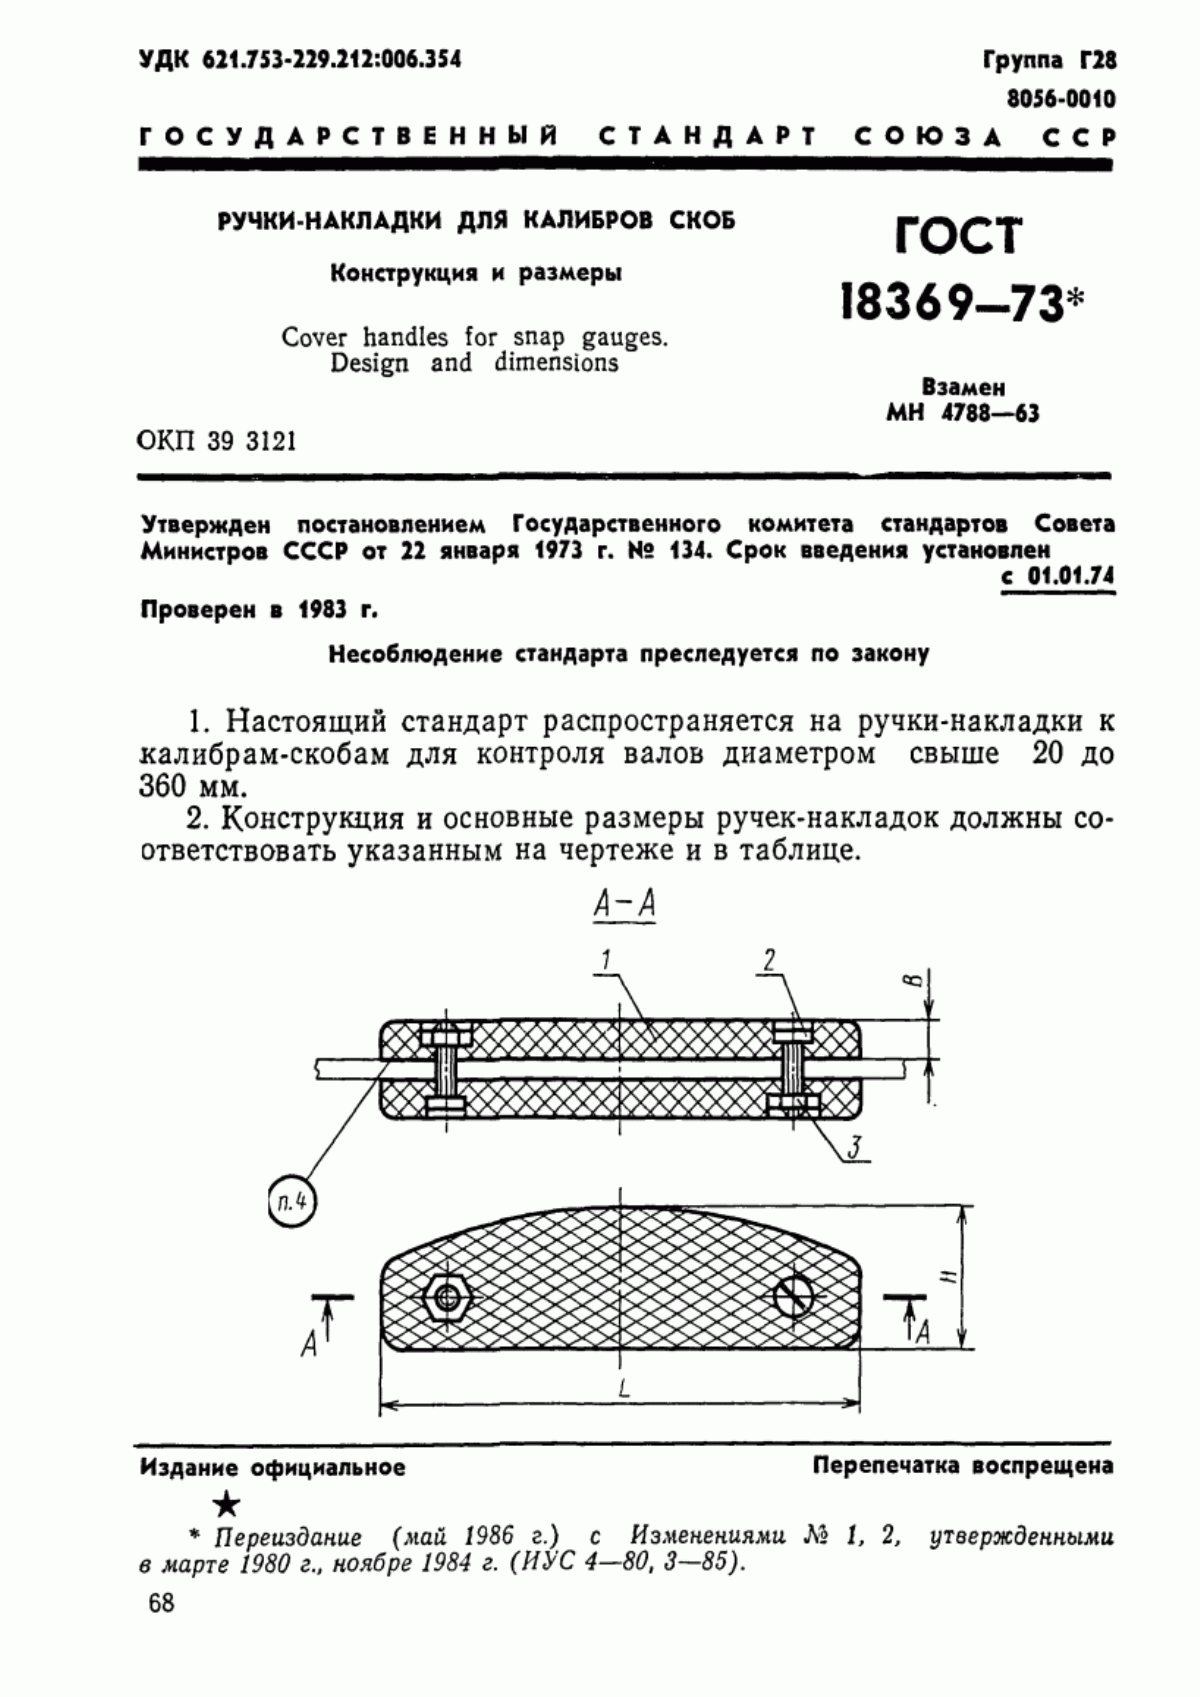 ГОСТ 18369-73 Ручки-накладки для калибров скоб. Конструкция и размеры